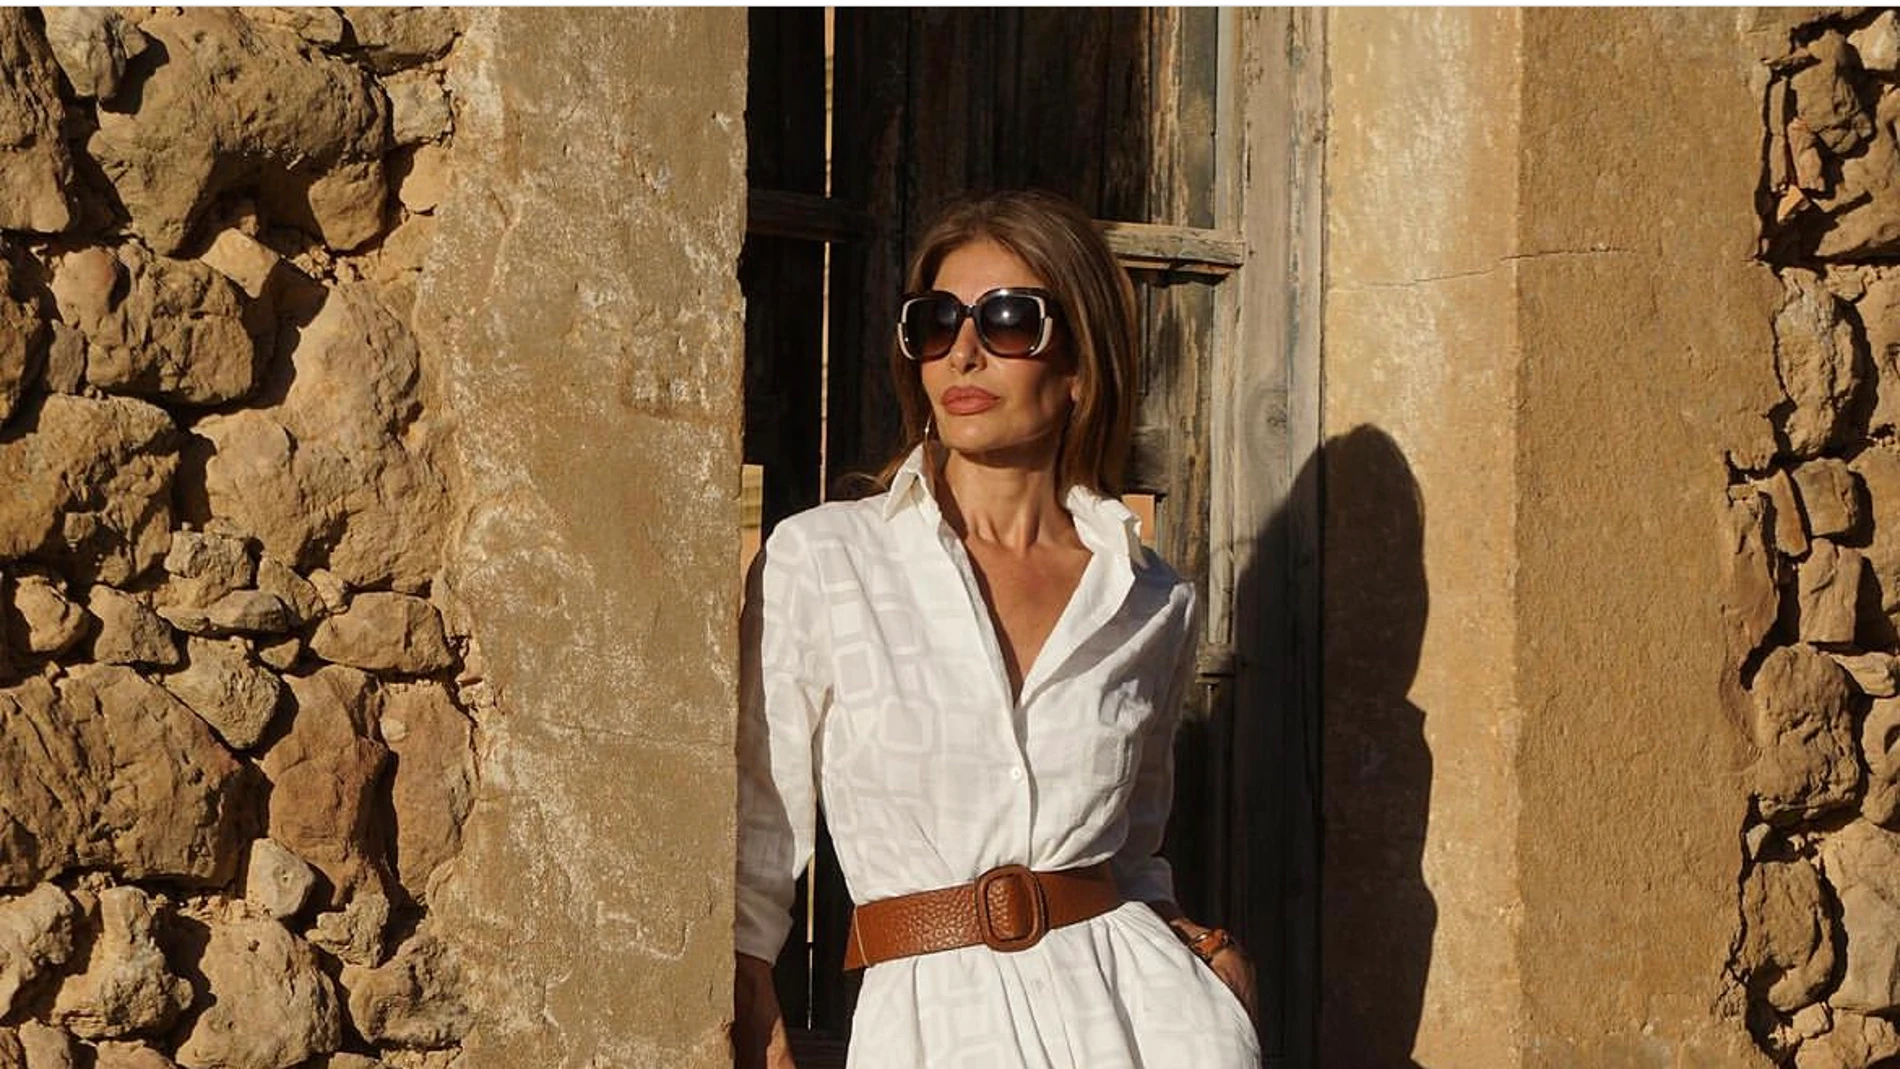 Pilar de Arce arriesga y gana con el vestido blanco midi definitivo 'made in Spain' que querrás usar para todo tipo de ocasiones